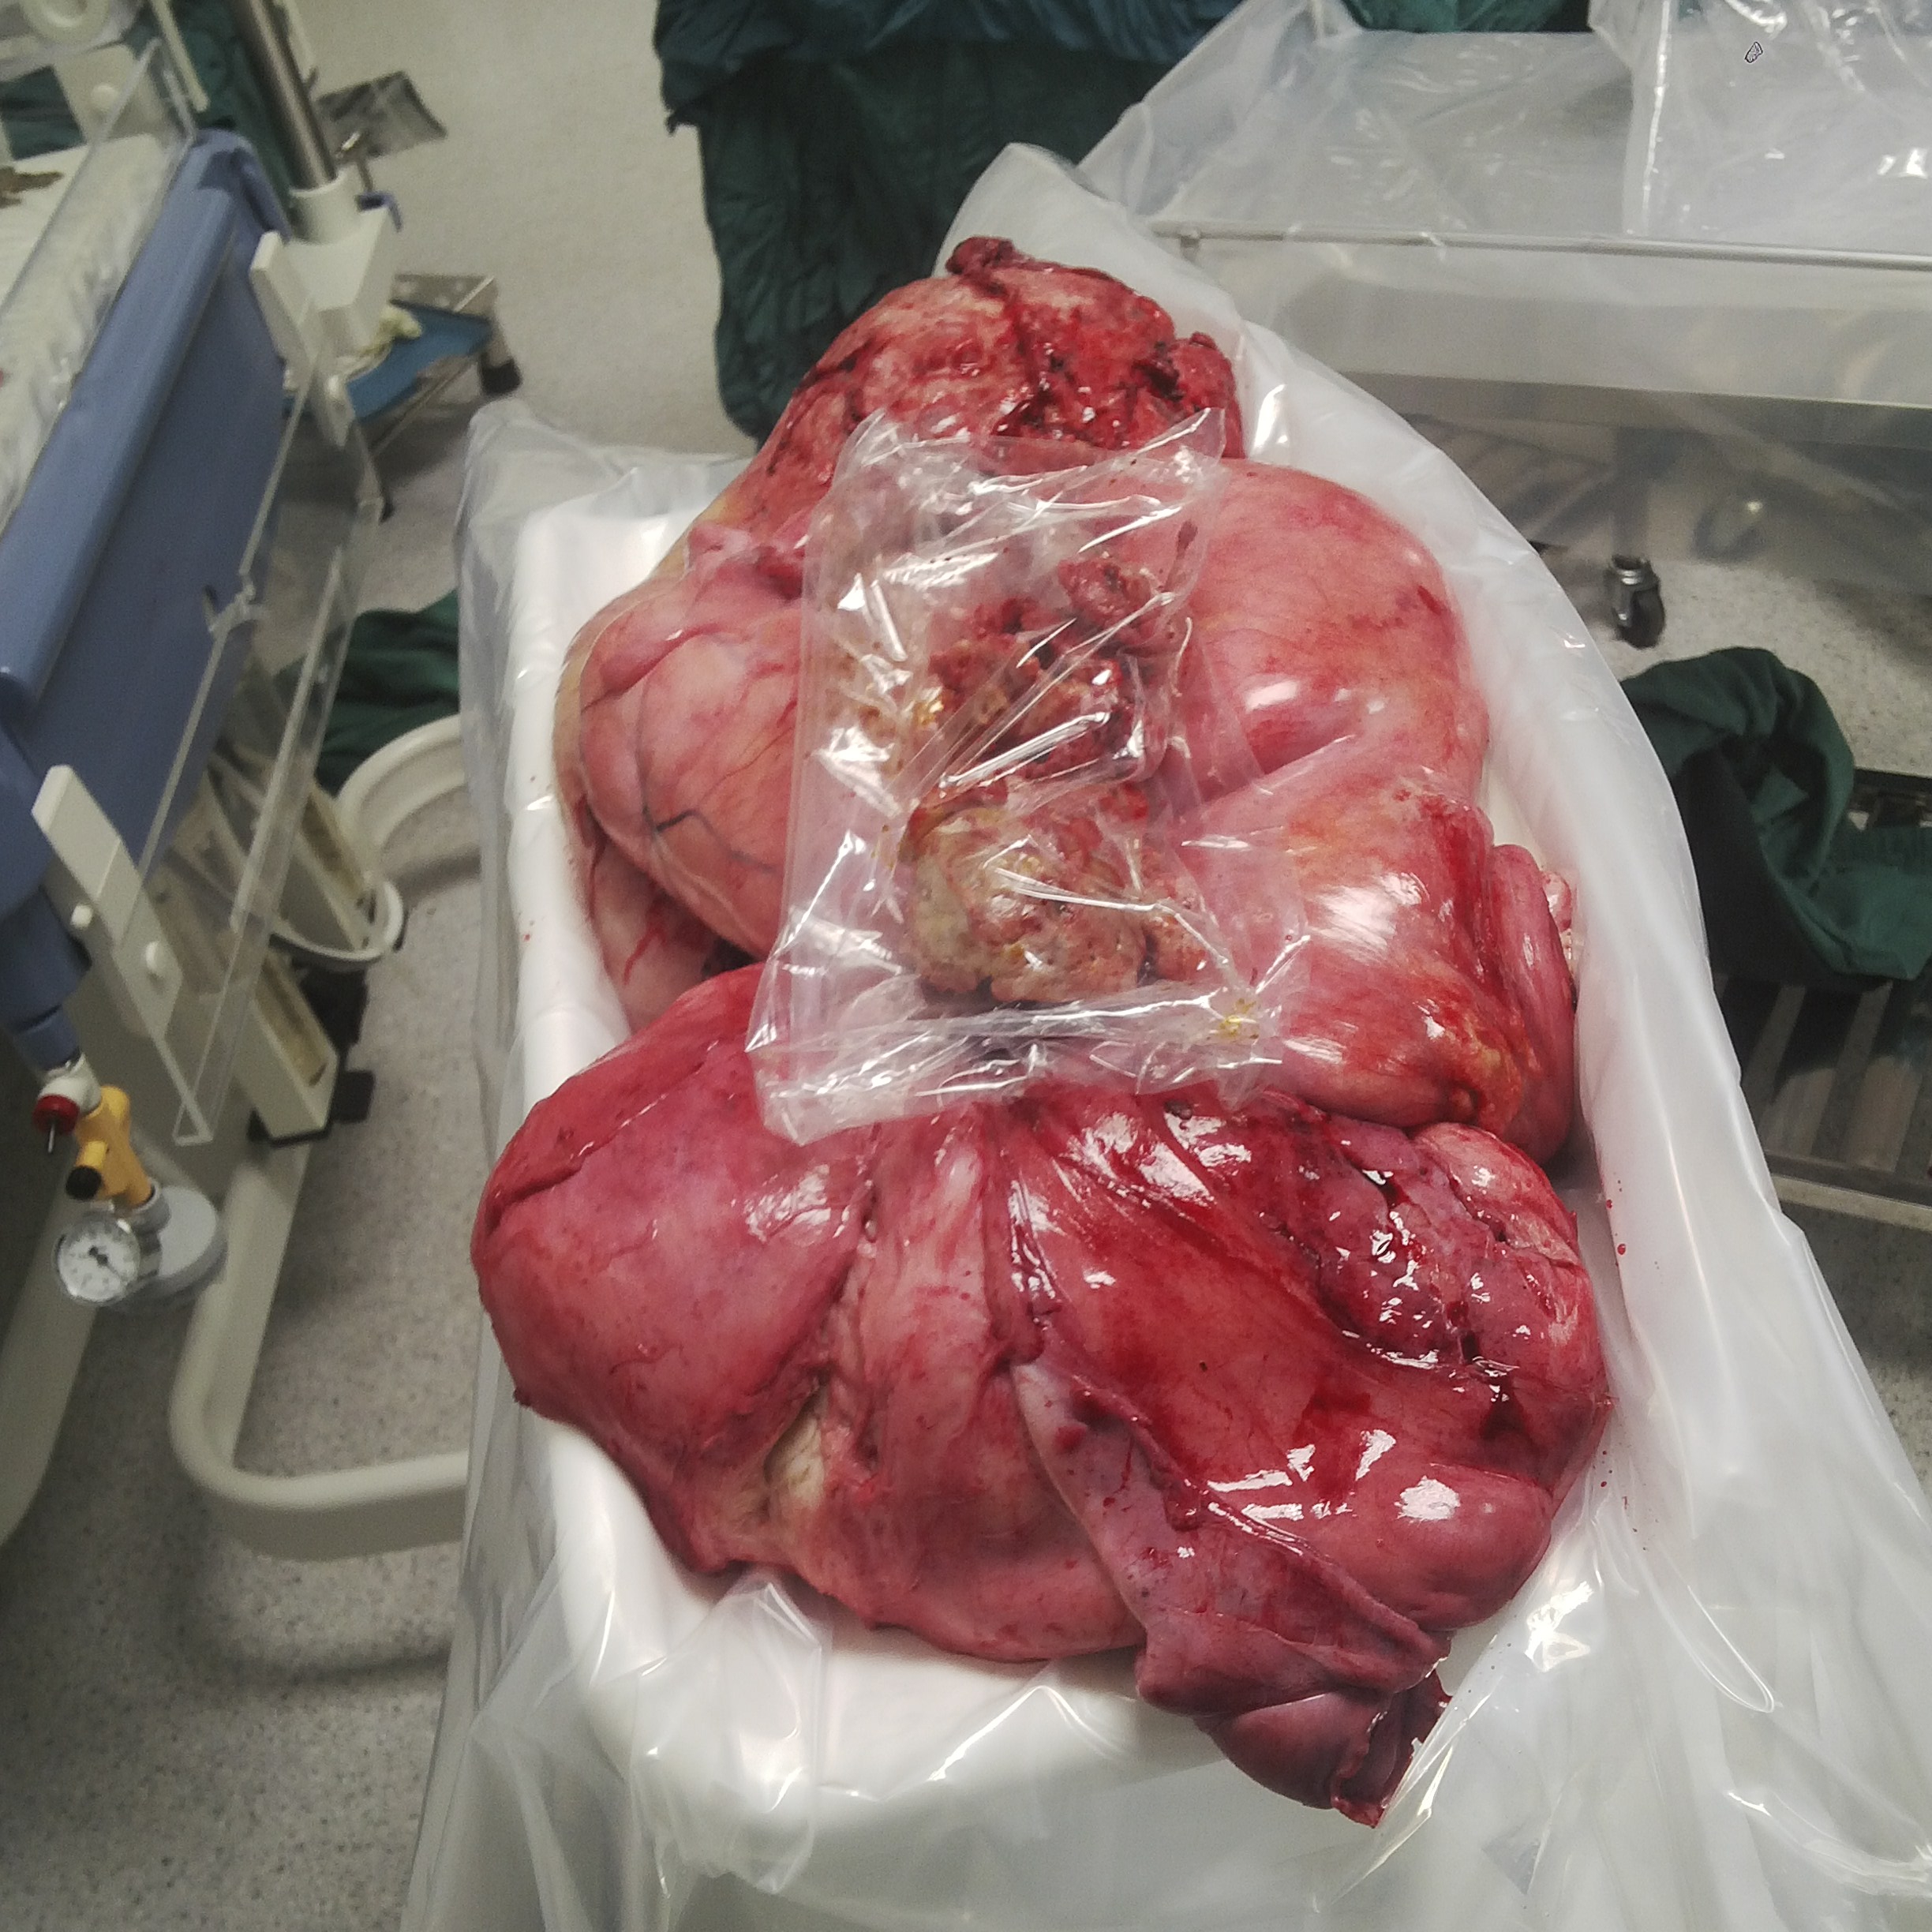 Khối u được phẫu thuật lấy ra ngoài - Ảnh: Bệnh viện đa khoa Đồng Nai cung cấp